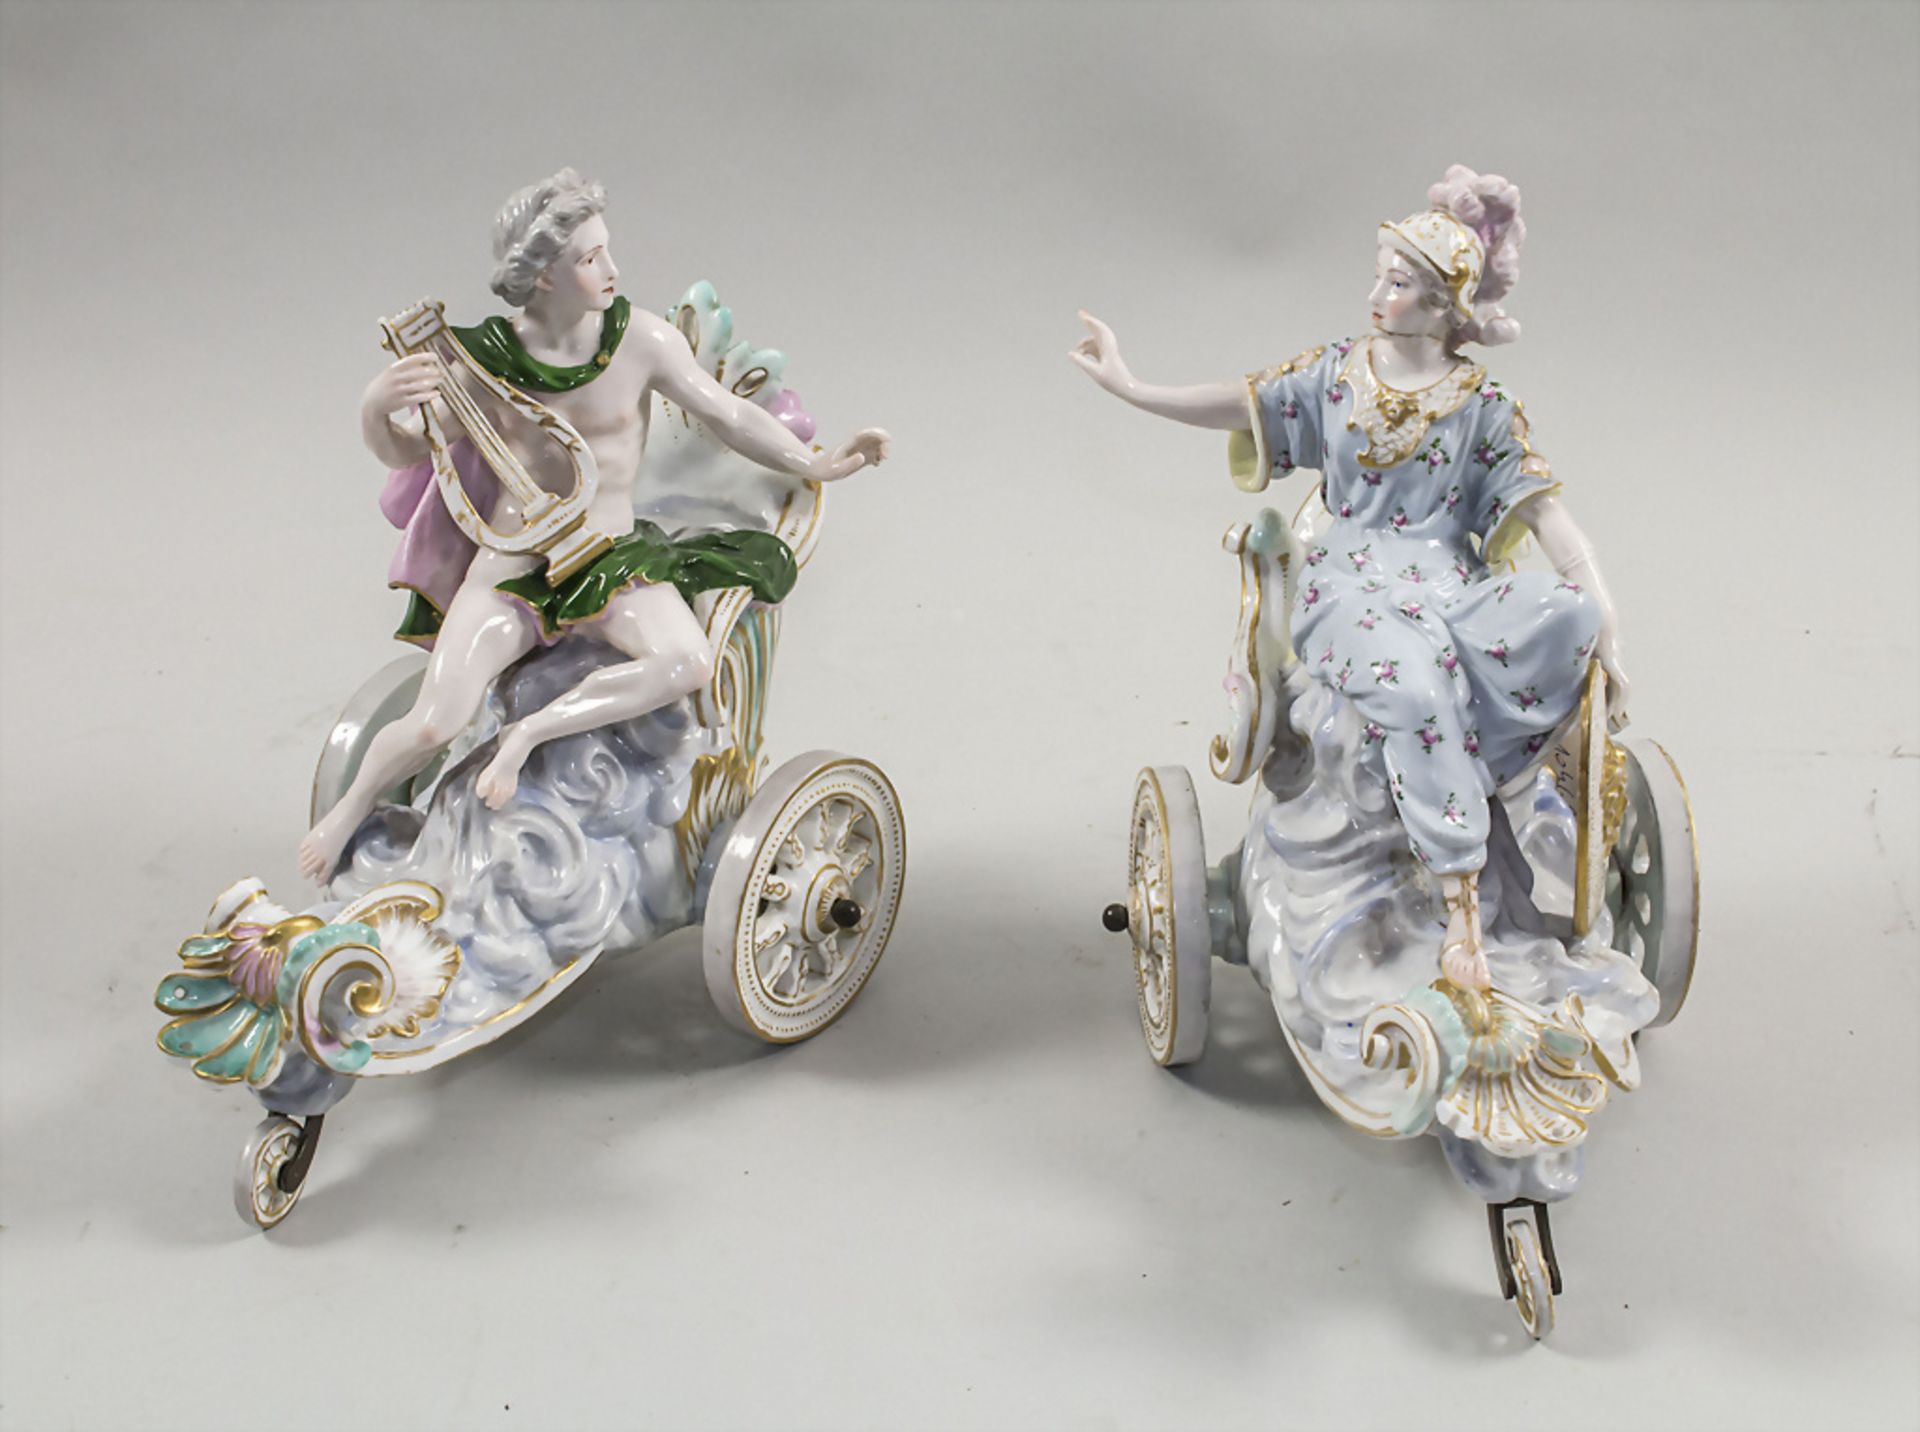 Seltenes Figurenpaar auf Streitwagen / A rare figural pair on chariots, Meissen, ... - Image 17 of 17